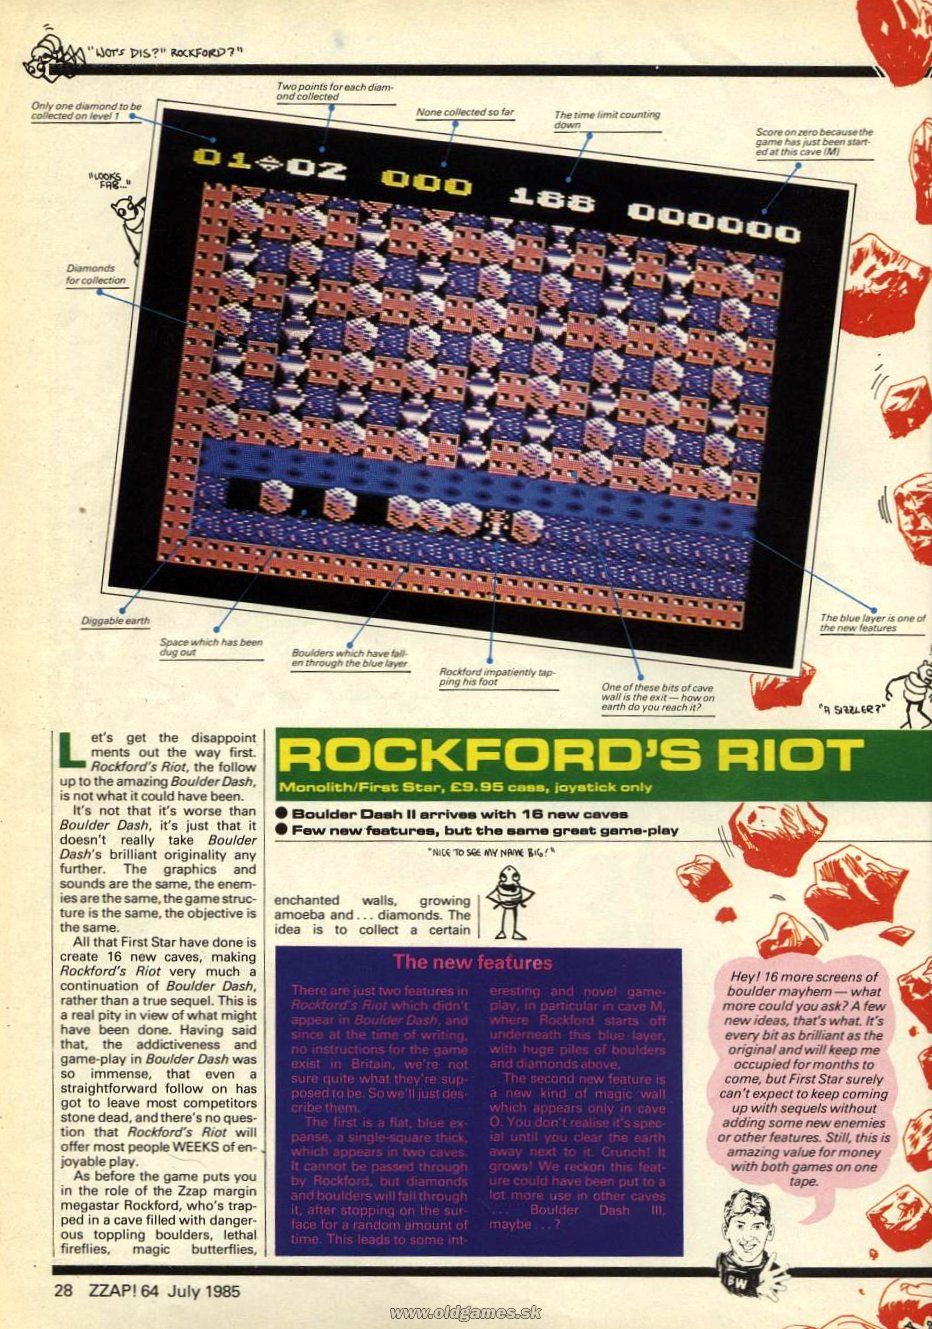 Rockford's Riot (82%)